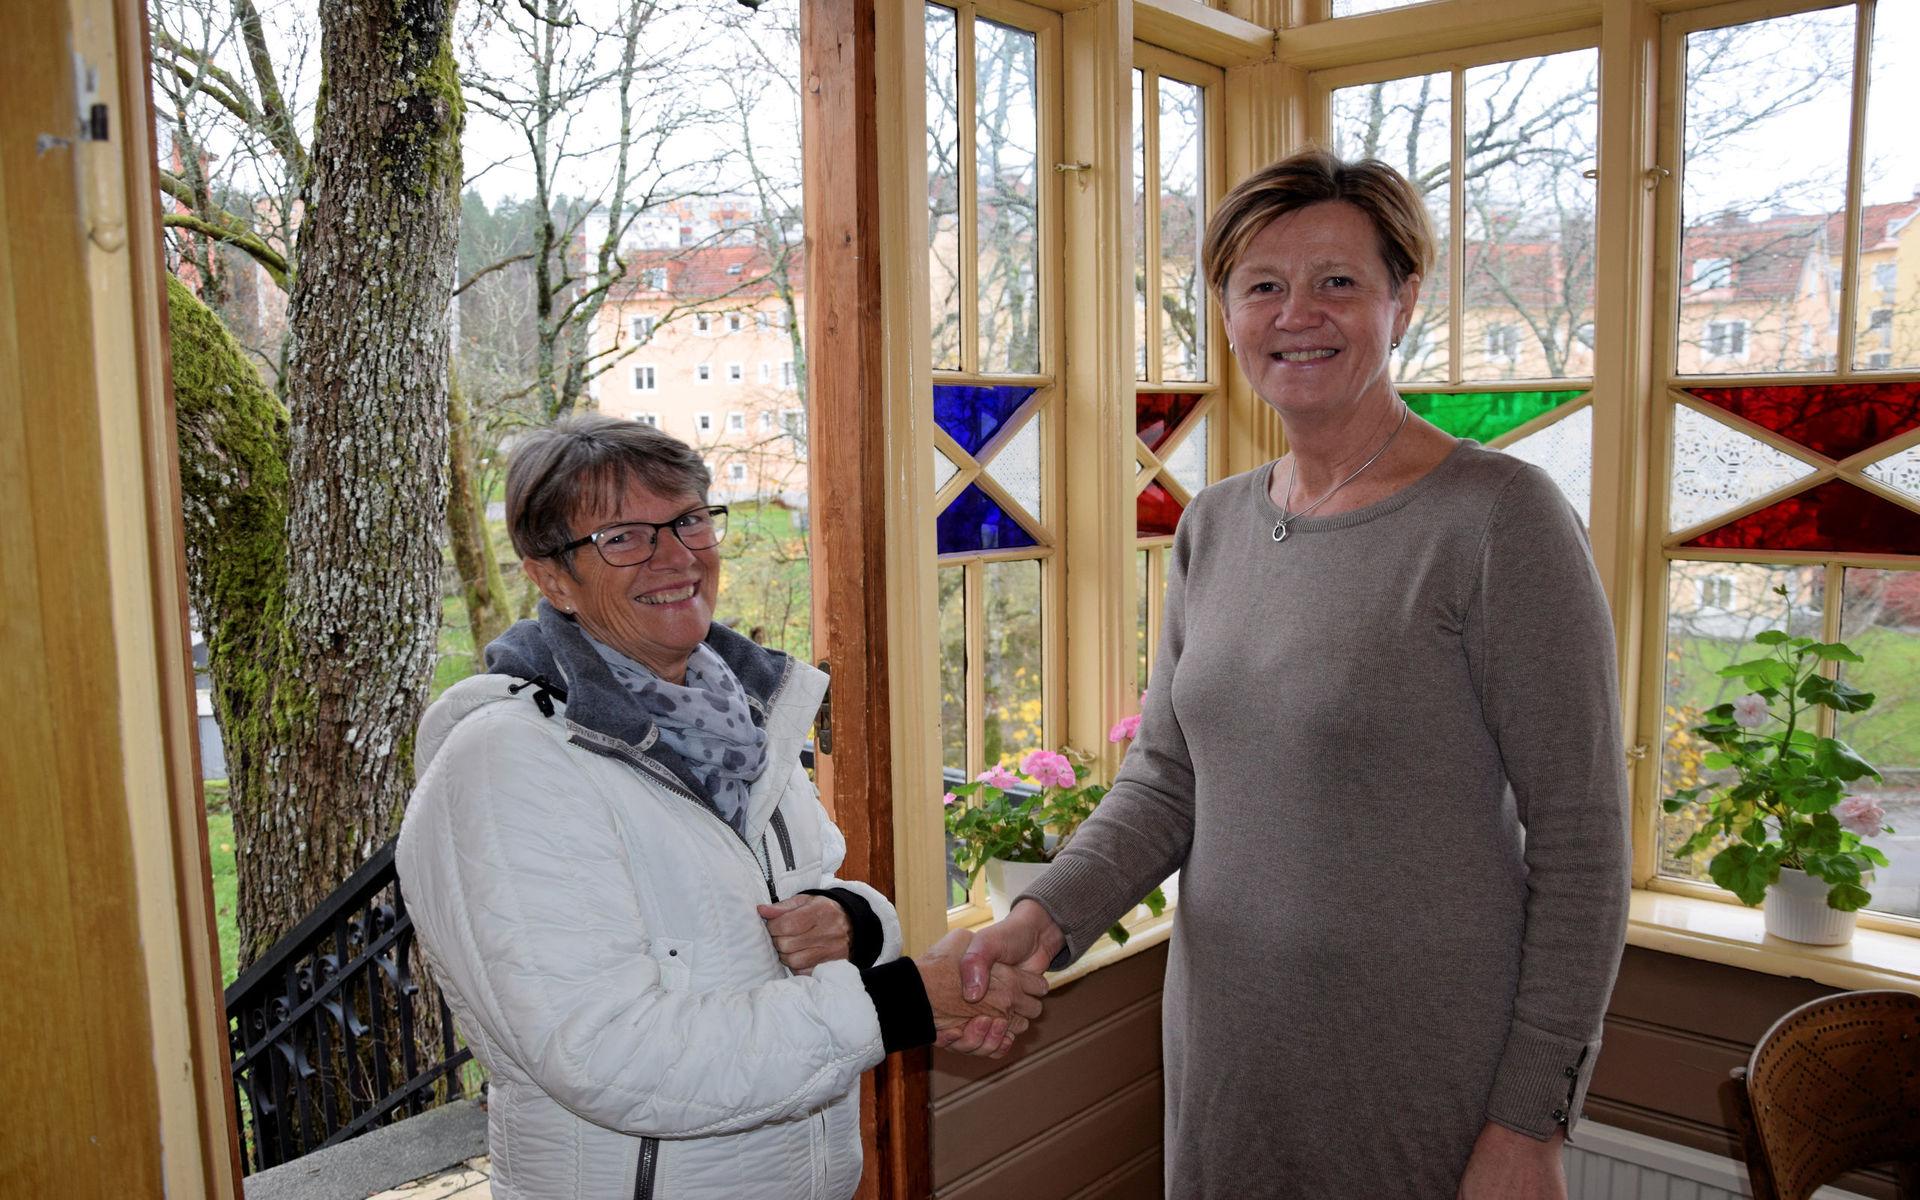 Här hälsar chefredaktör Ingalill Sundhage på Evy Lihnell och önskar henne välkommen till det öppna huset på Villa Elfkullen.